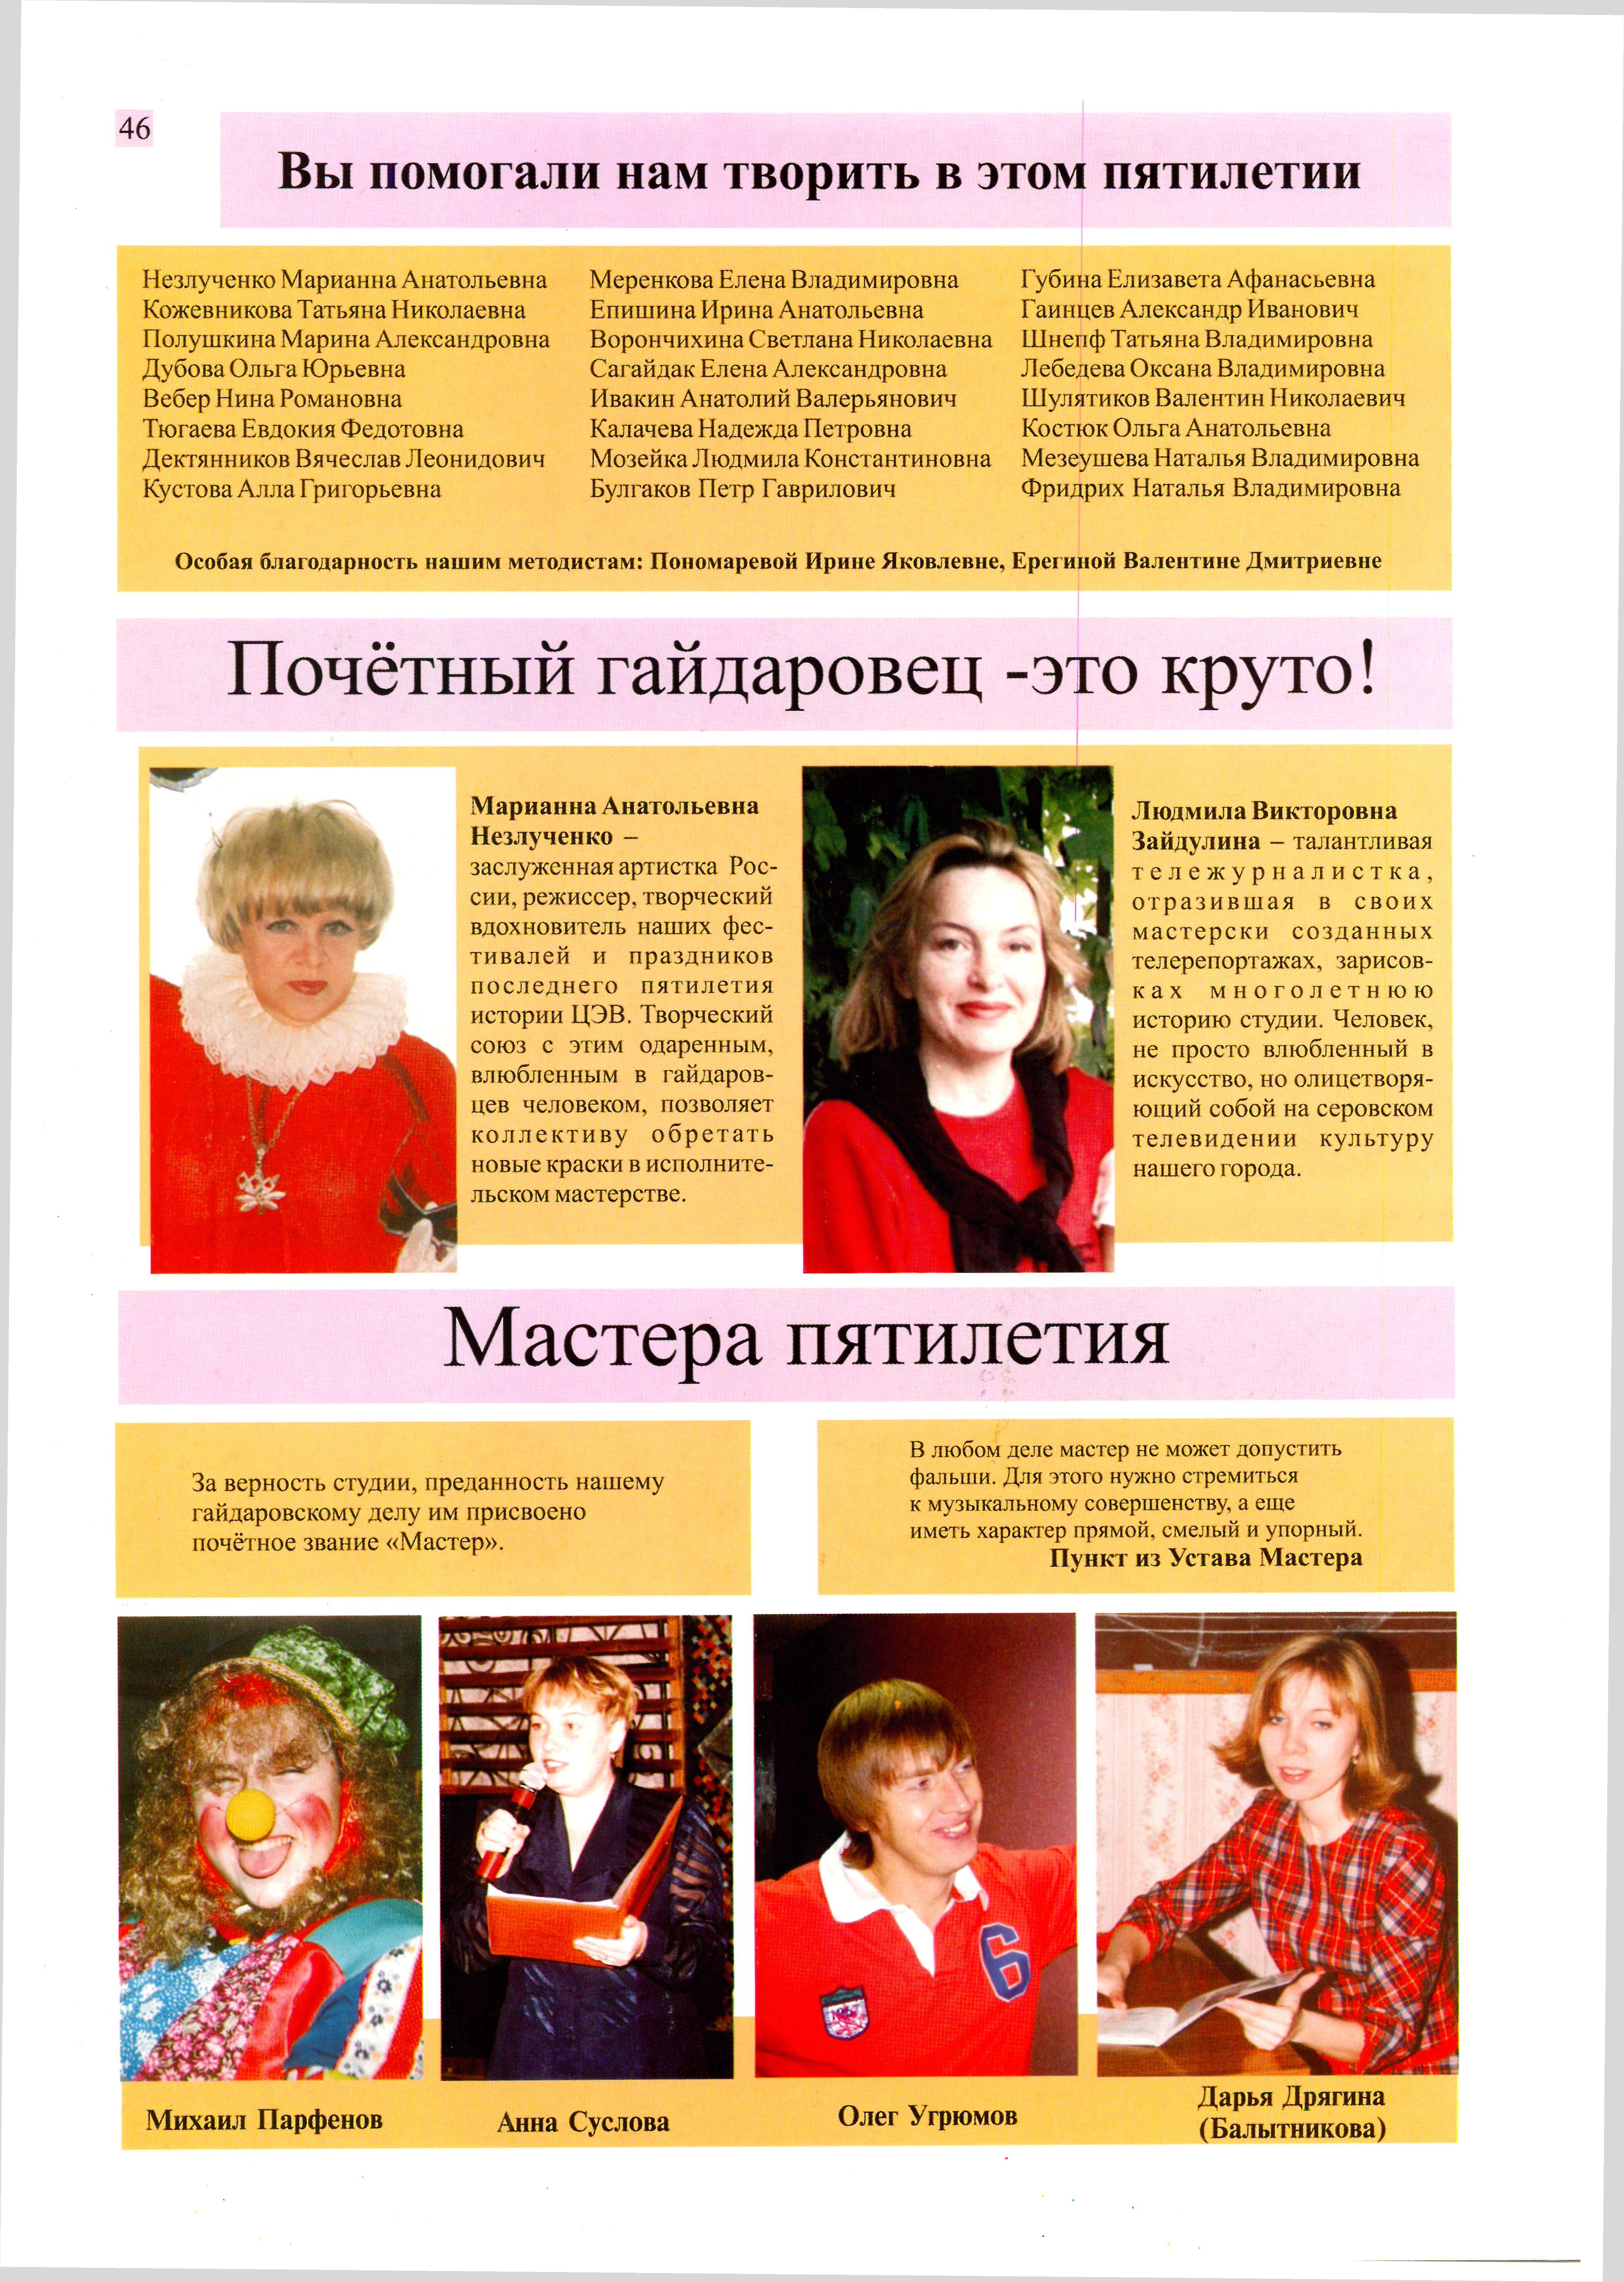 История Детской школы искусств 2001-2006 гг. - 0006